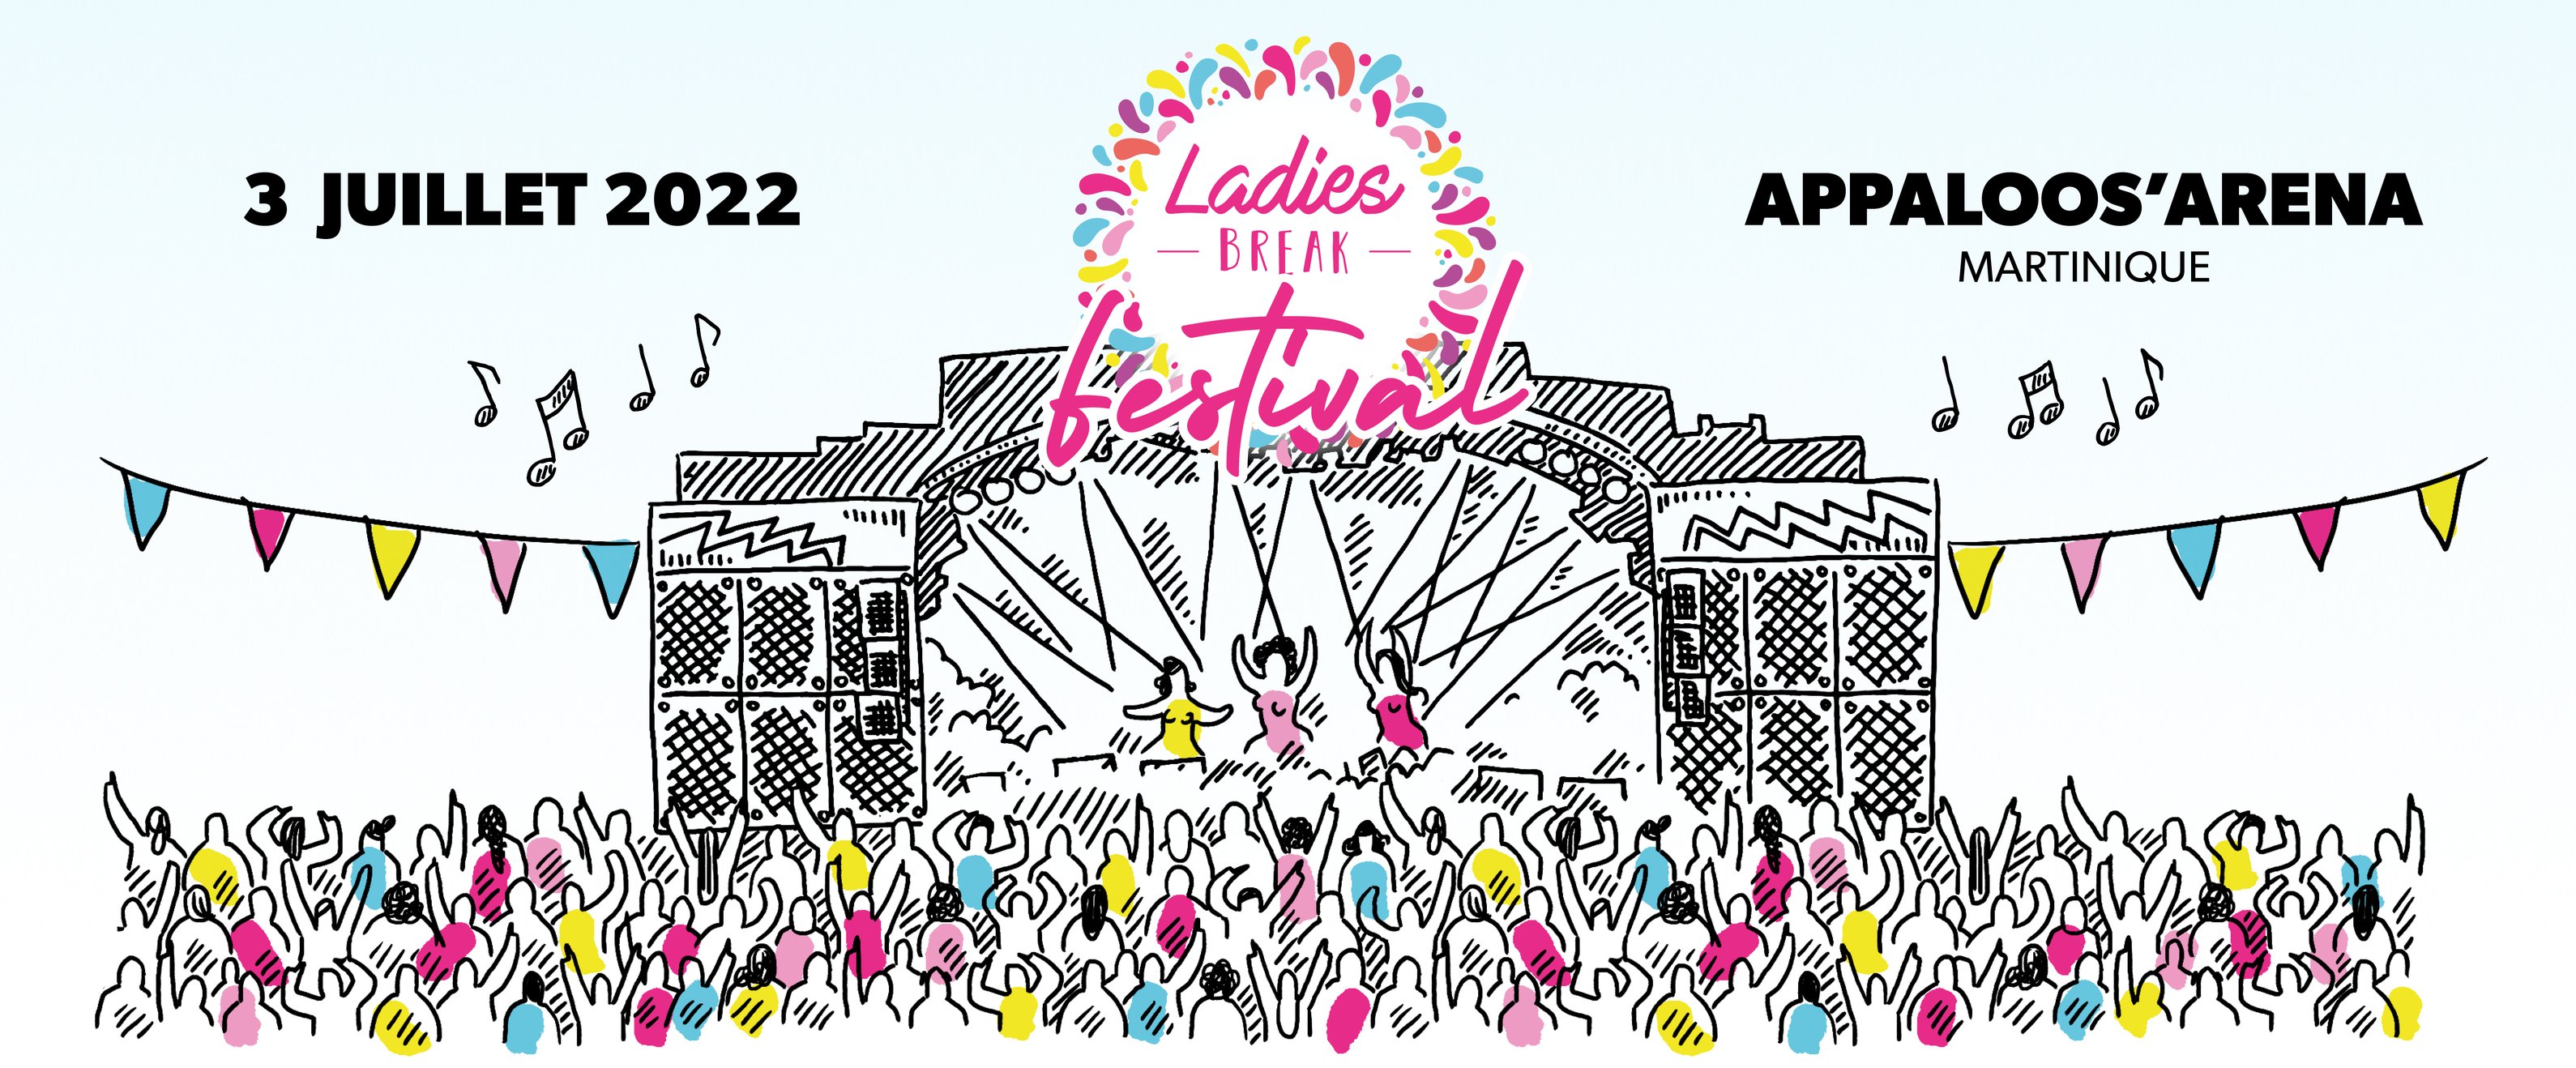     Première édition du Ladies Break Festival 

